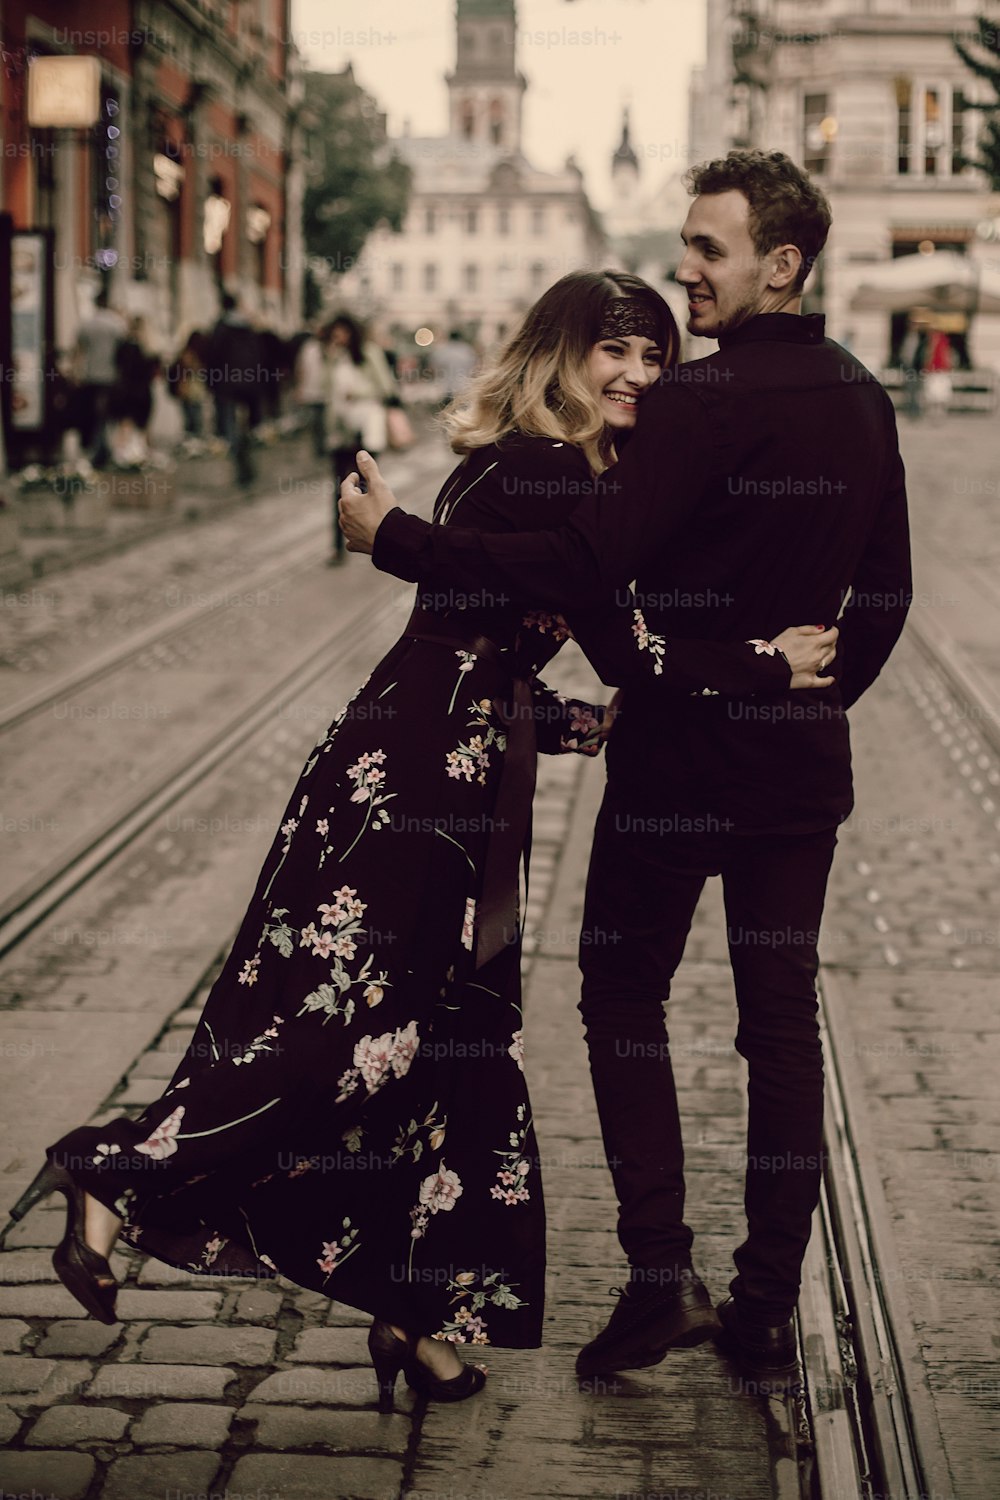 élégant couple de gitans amoureux marchant et souriant dans la rue de la ville du soir. Femme et homme s’embrassant doucement, moment atmosphérique français romantique drôle. l’humeur de l’amour. Vue arrière